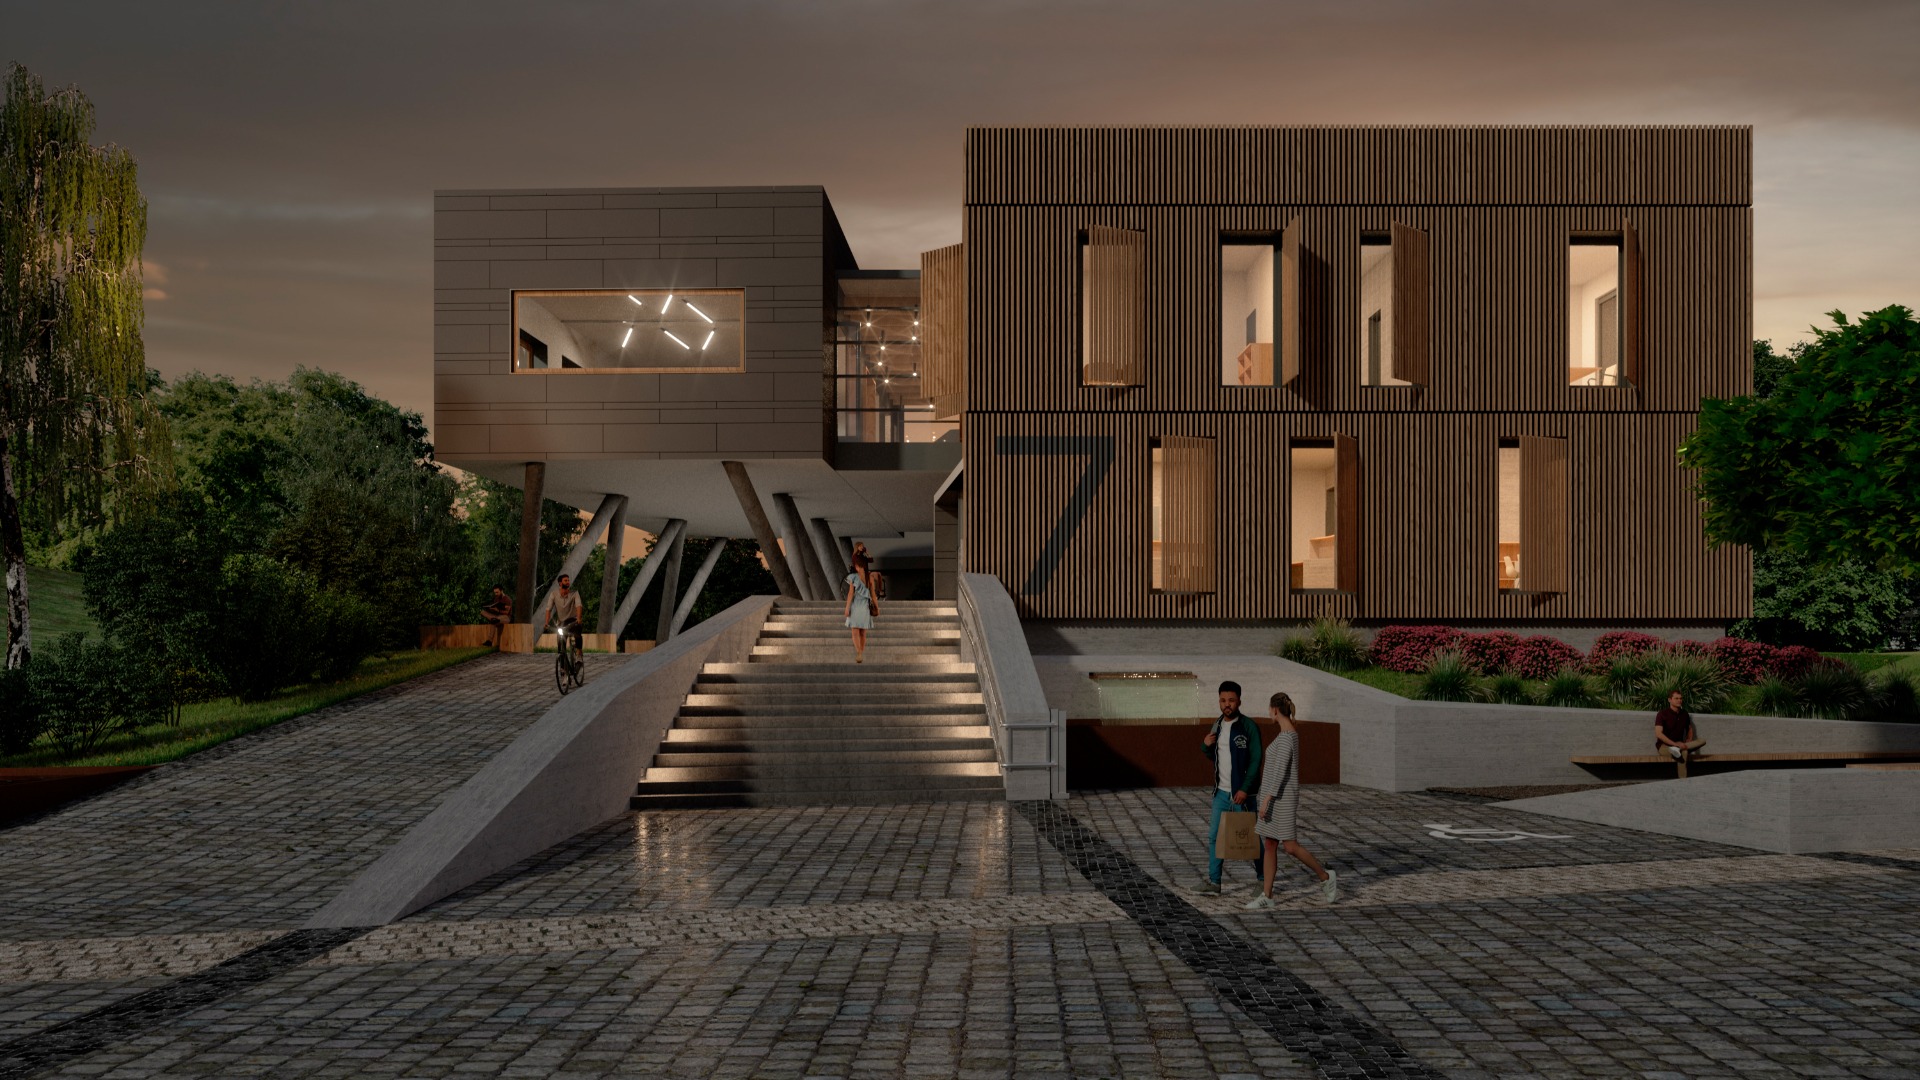 Neues Rathaus - Architekturwettbewerb